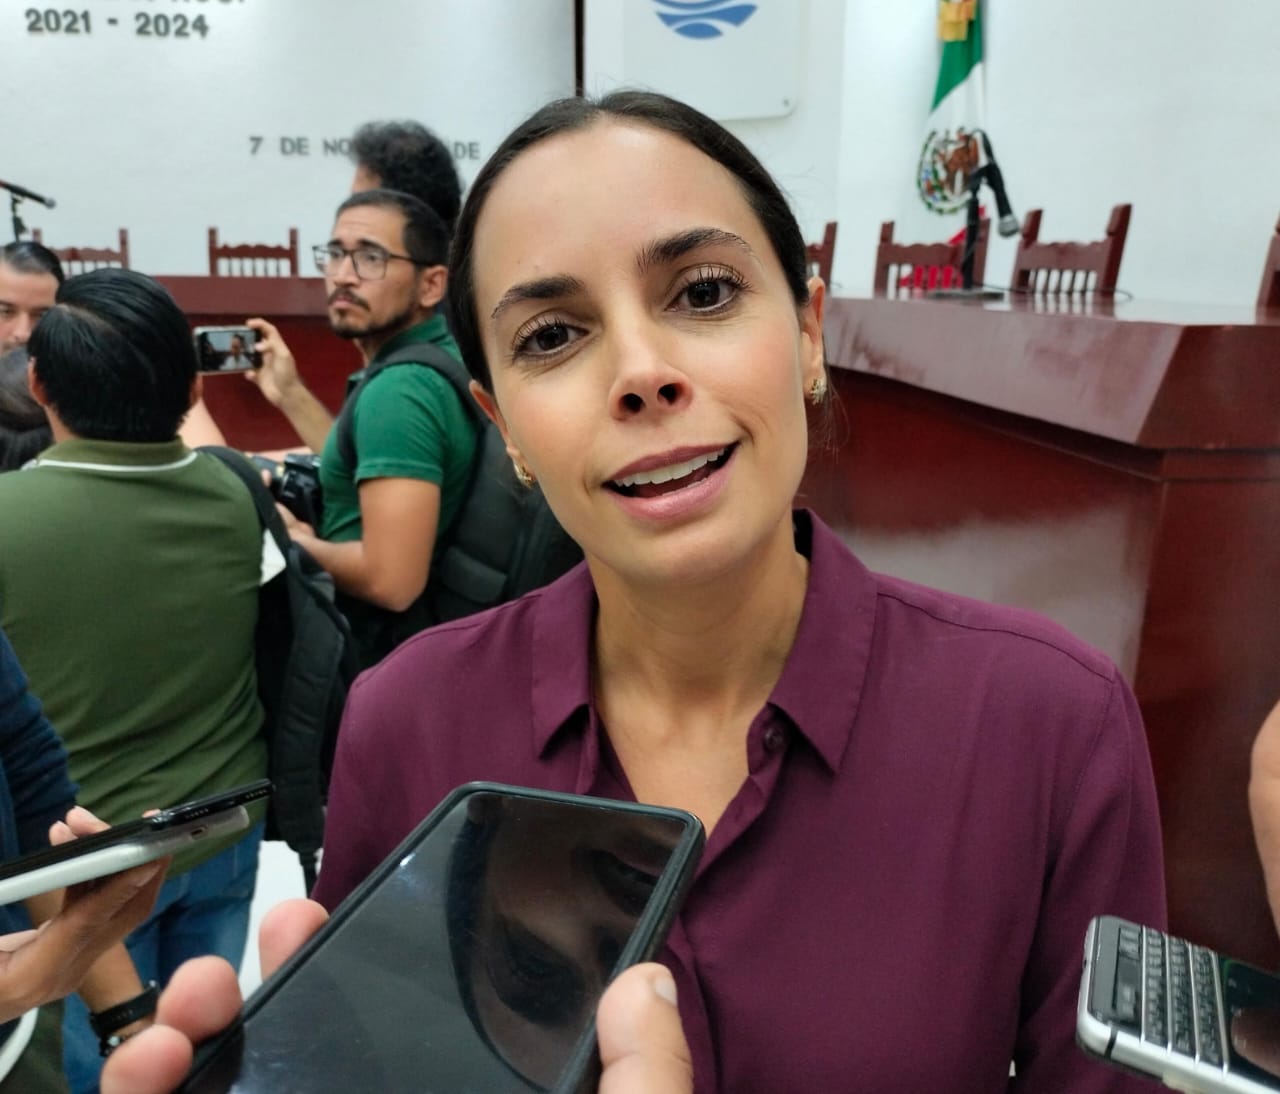 Destinan para 2024 más de 900 mdp para obra pública en Cancún, destaca Ana Paty Peralta